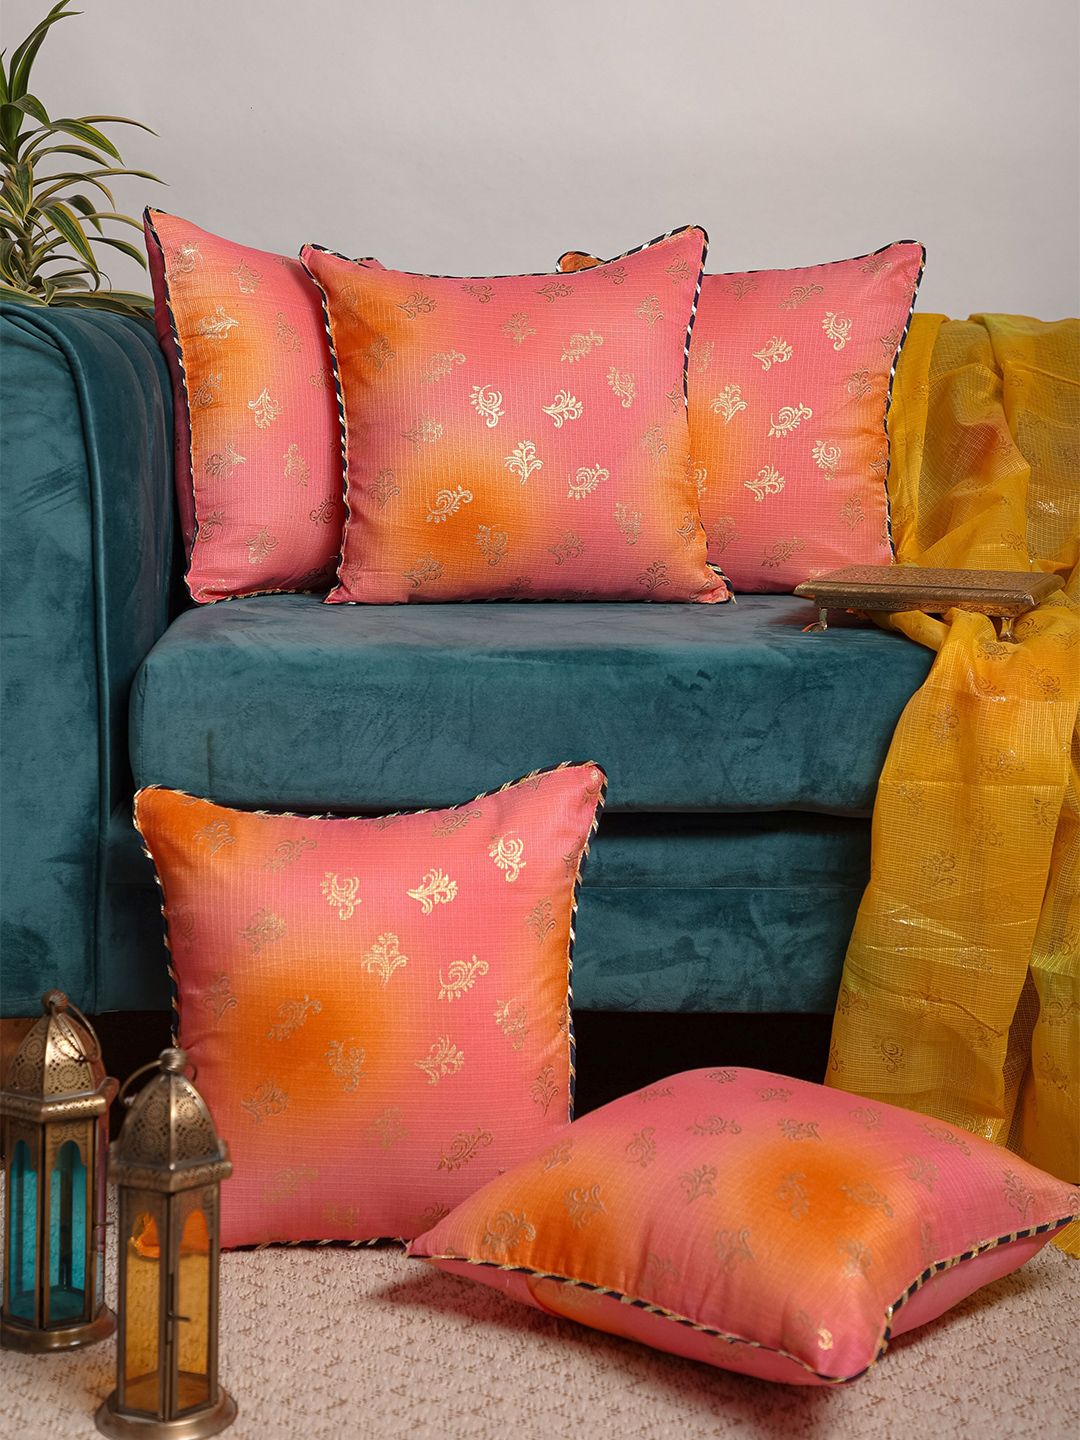 Jaipur Folk Pink & Orange Set of 5 Ethnic Motifs Square Cushion Covers Price in India